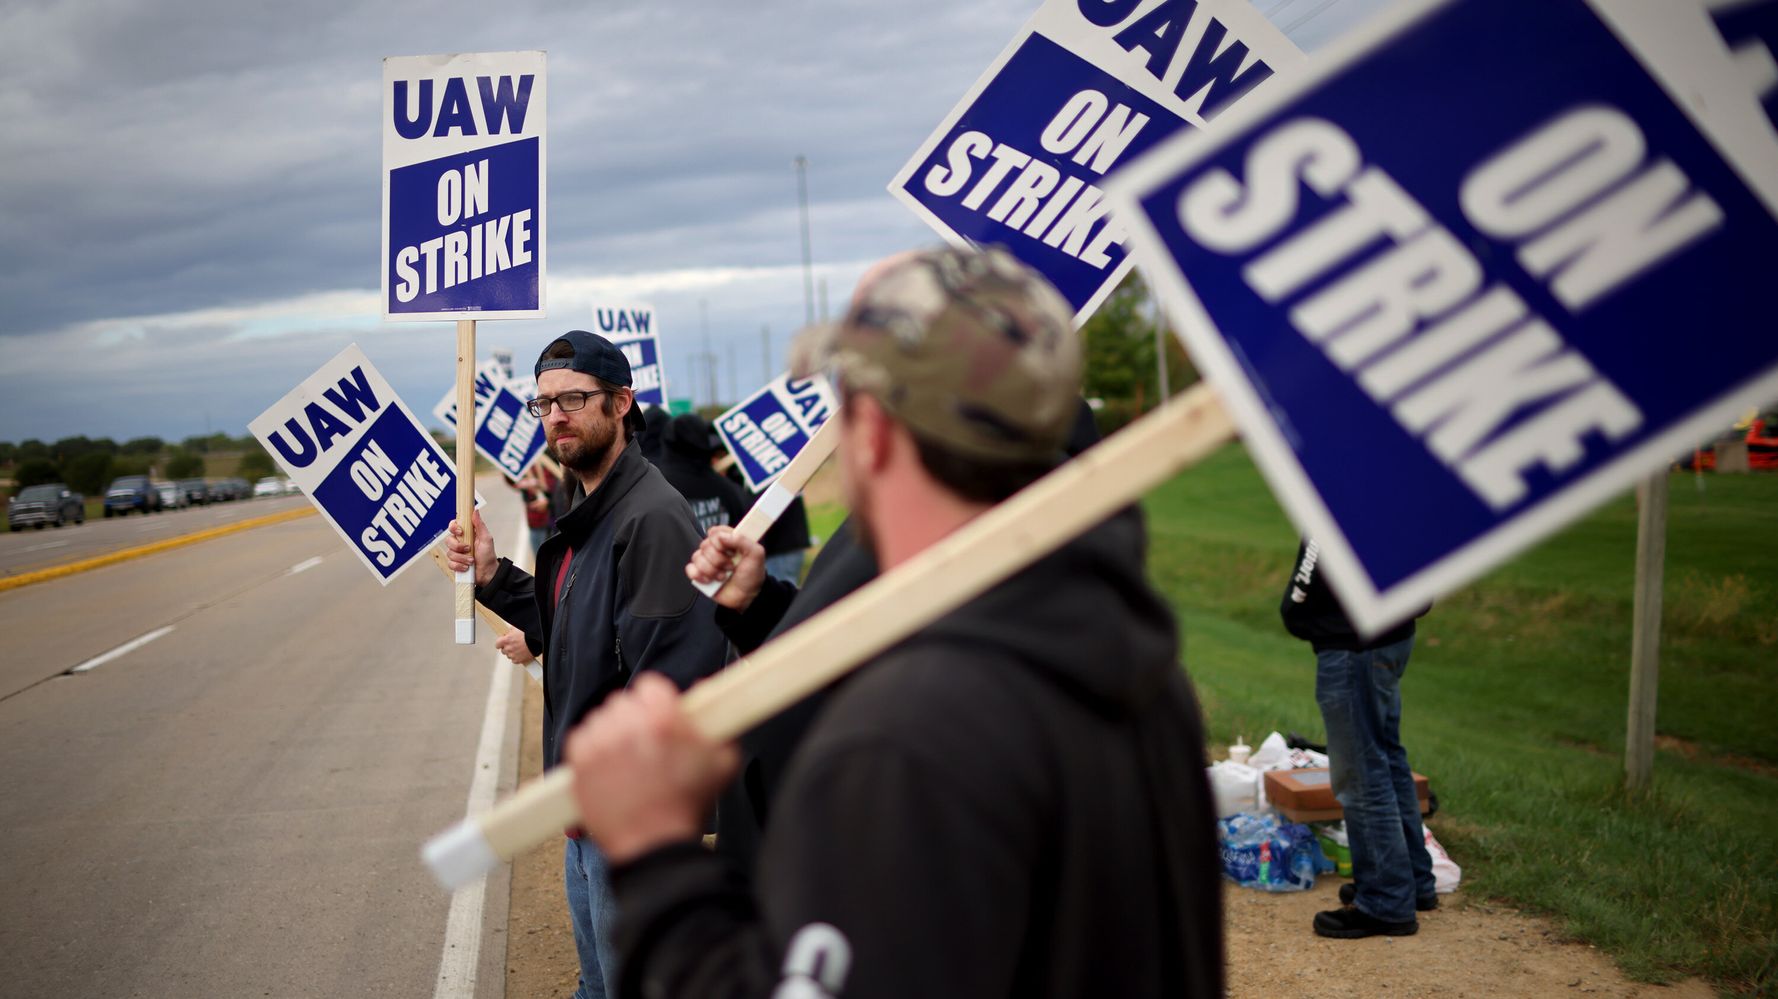 Los demócratas están cerca de implementar grandes multas por desmantelar sindicatos ilegales